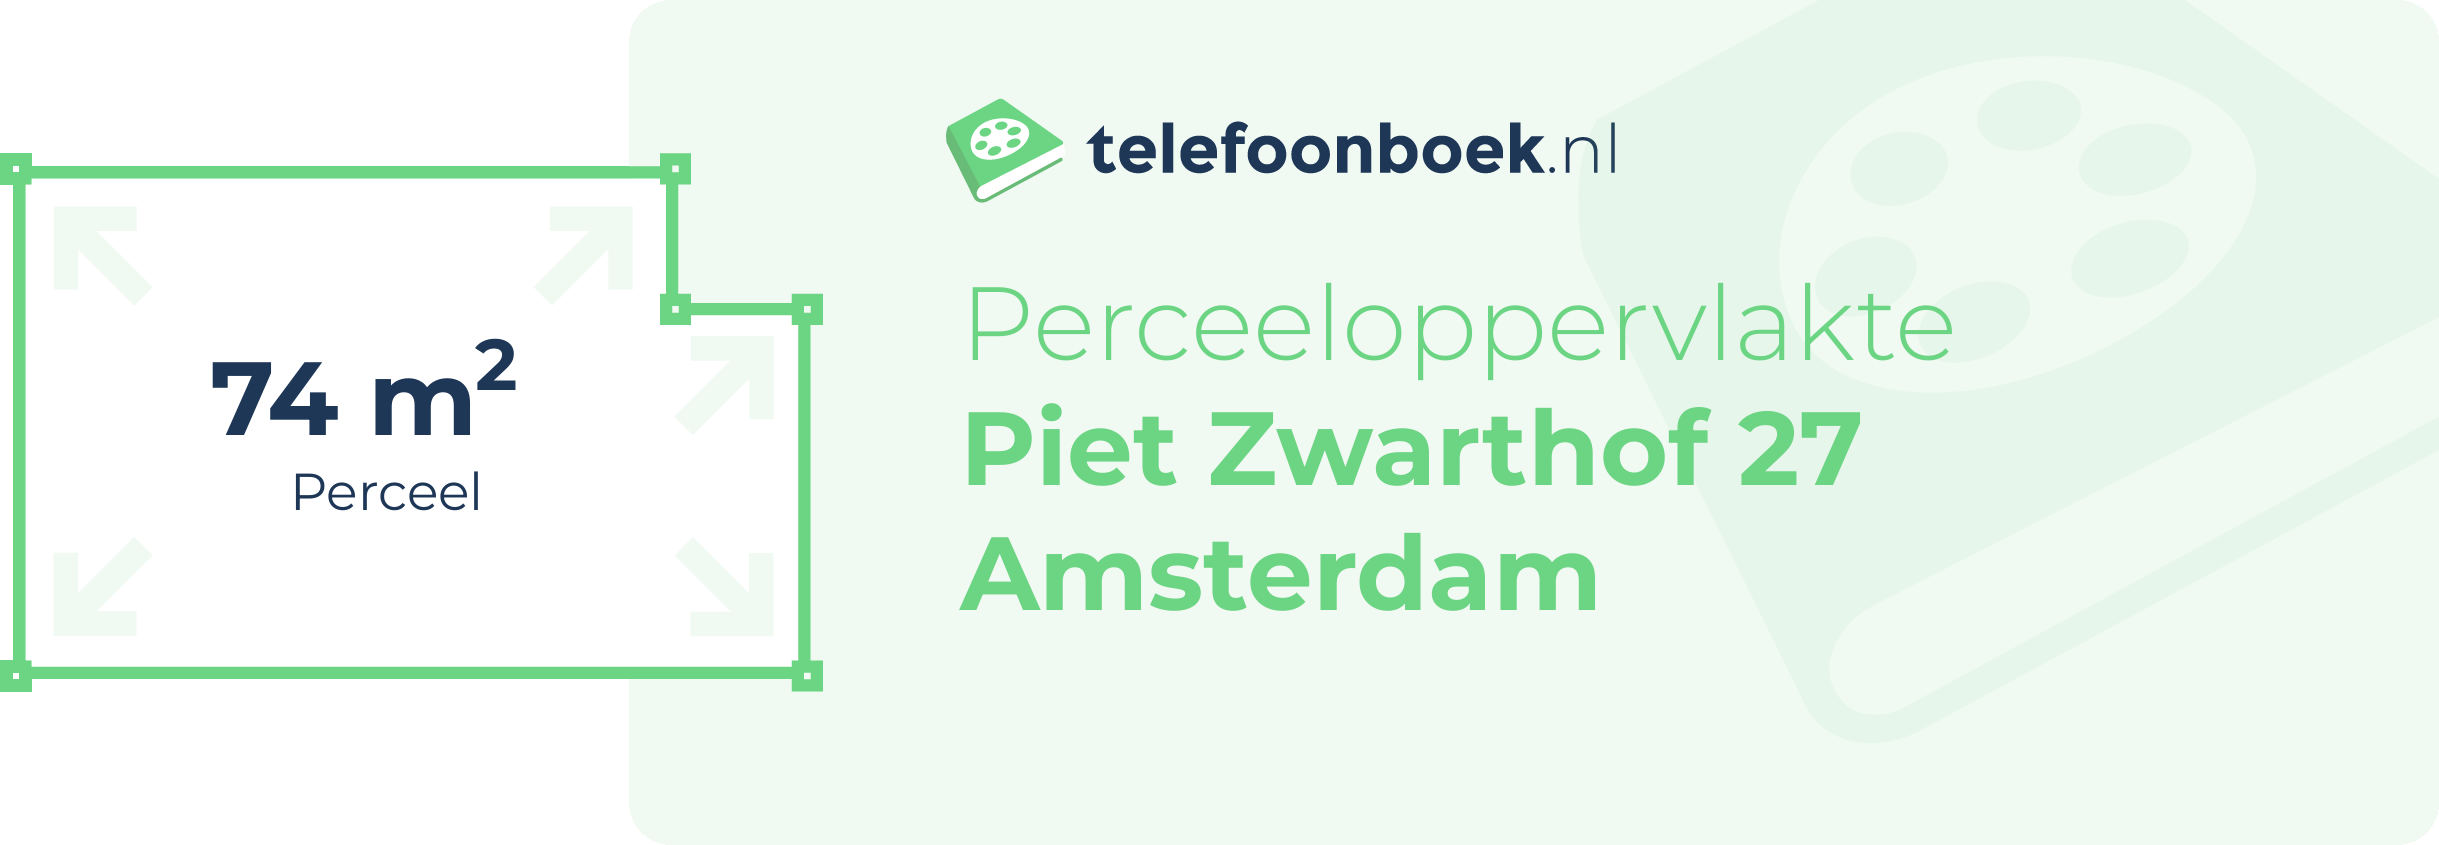 Perceeloppervlakte Piet Zwarthof 27 Amsterdam